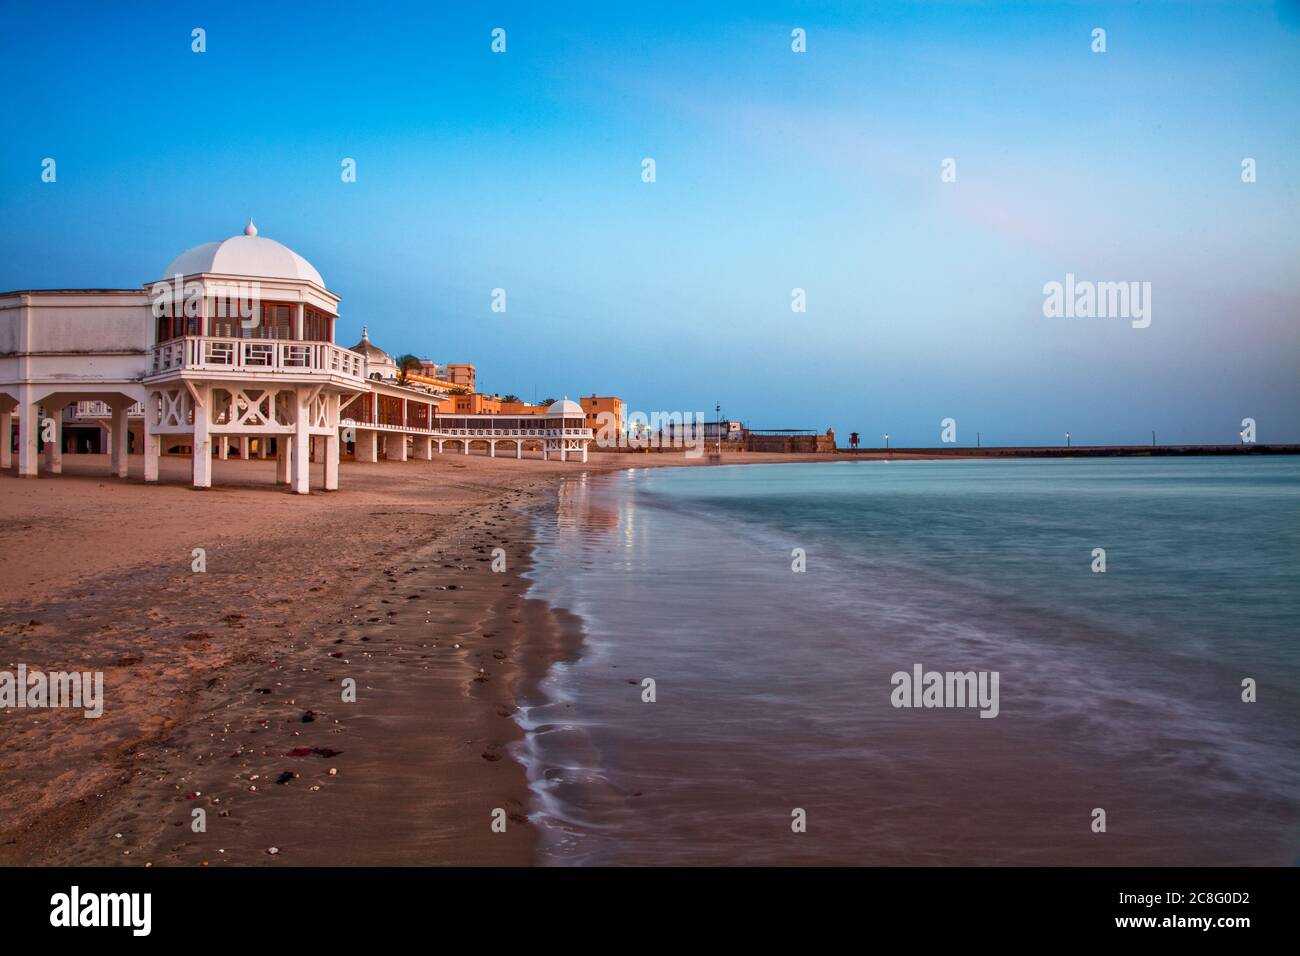 Geographie / Reisen, Spanien, ein Abend, pastellblauer Himmel betont das krasse Weiß des Piers an einem Strand von Cadiz i, No-Tourism-Advertising-Use Stockfoto